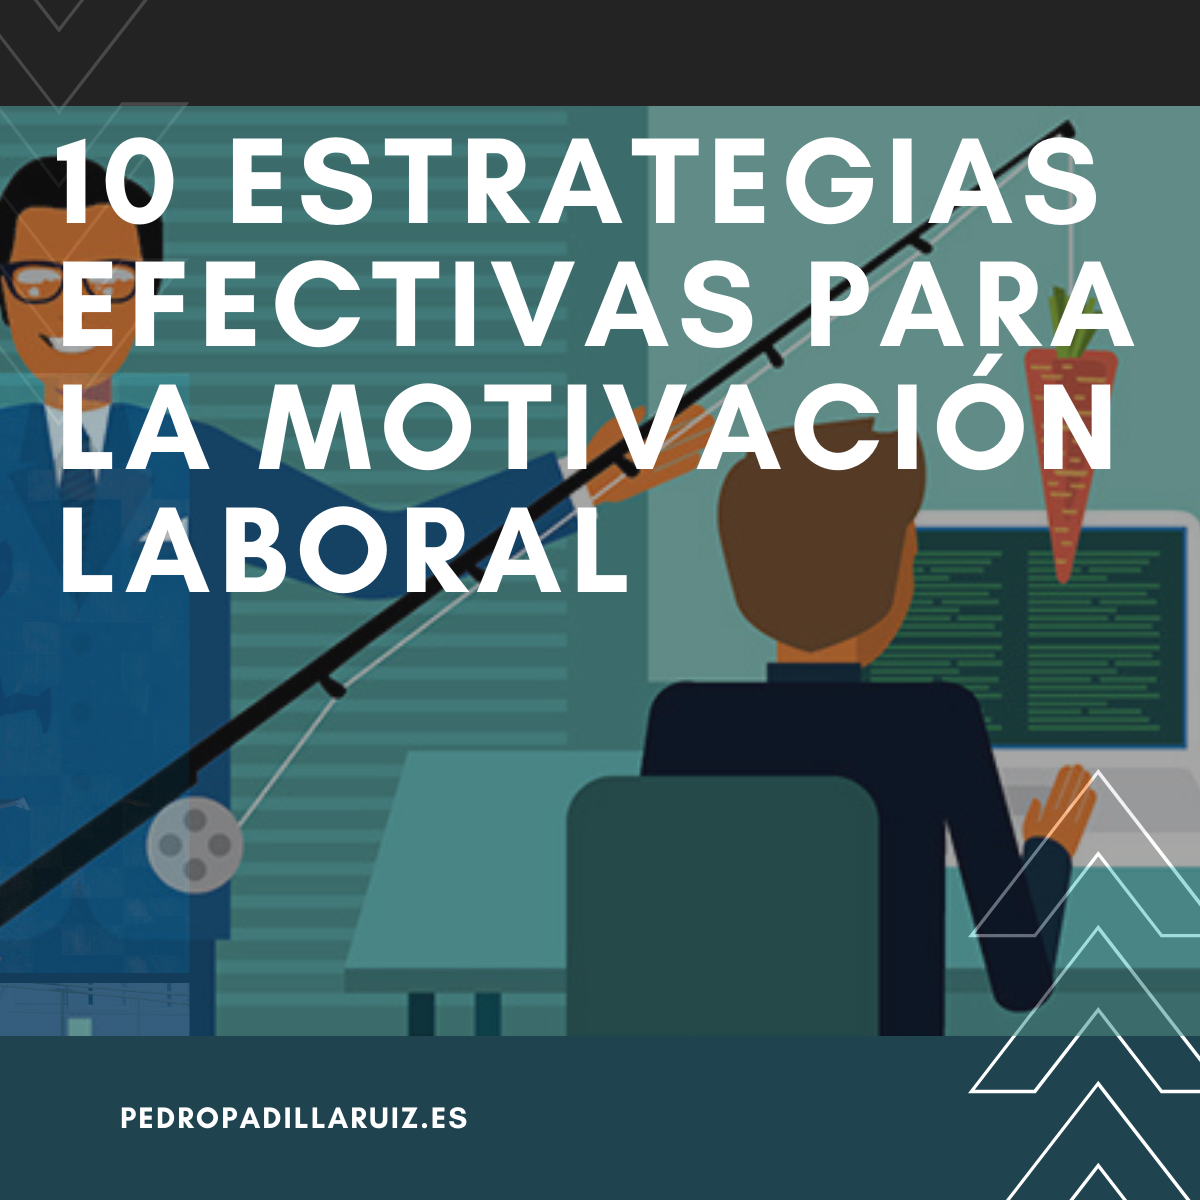 10 estrategias efectivas para la motivación laboral